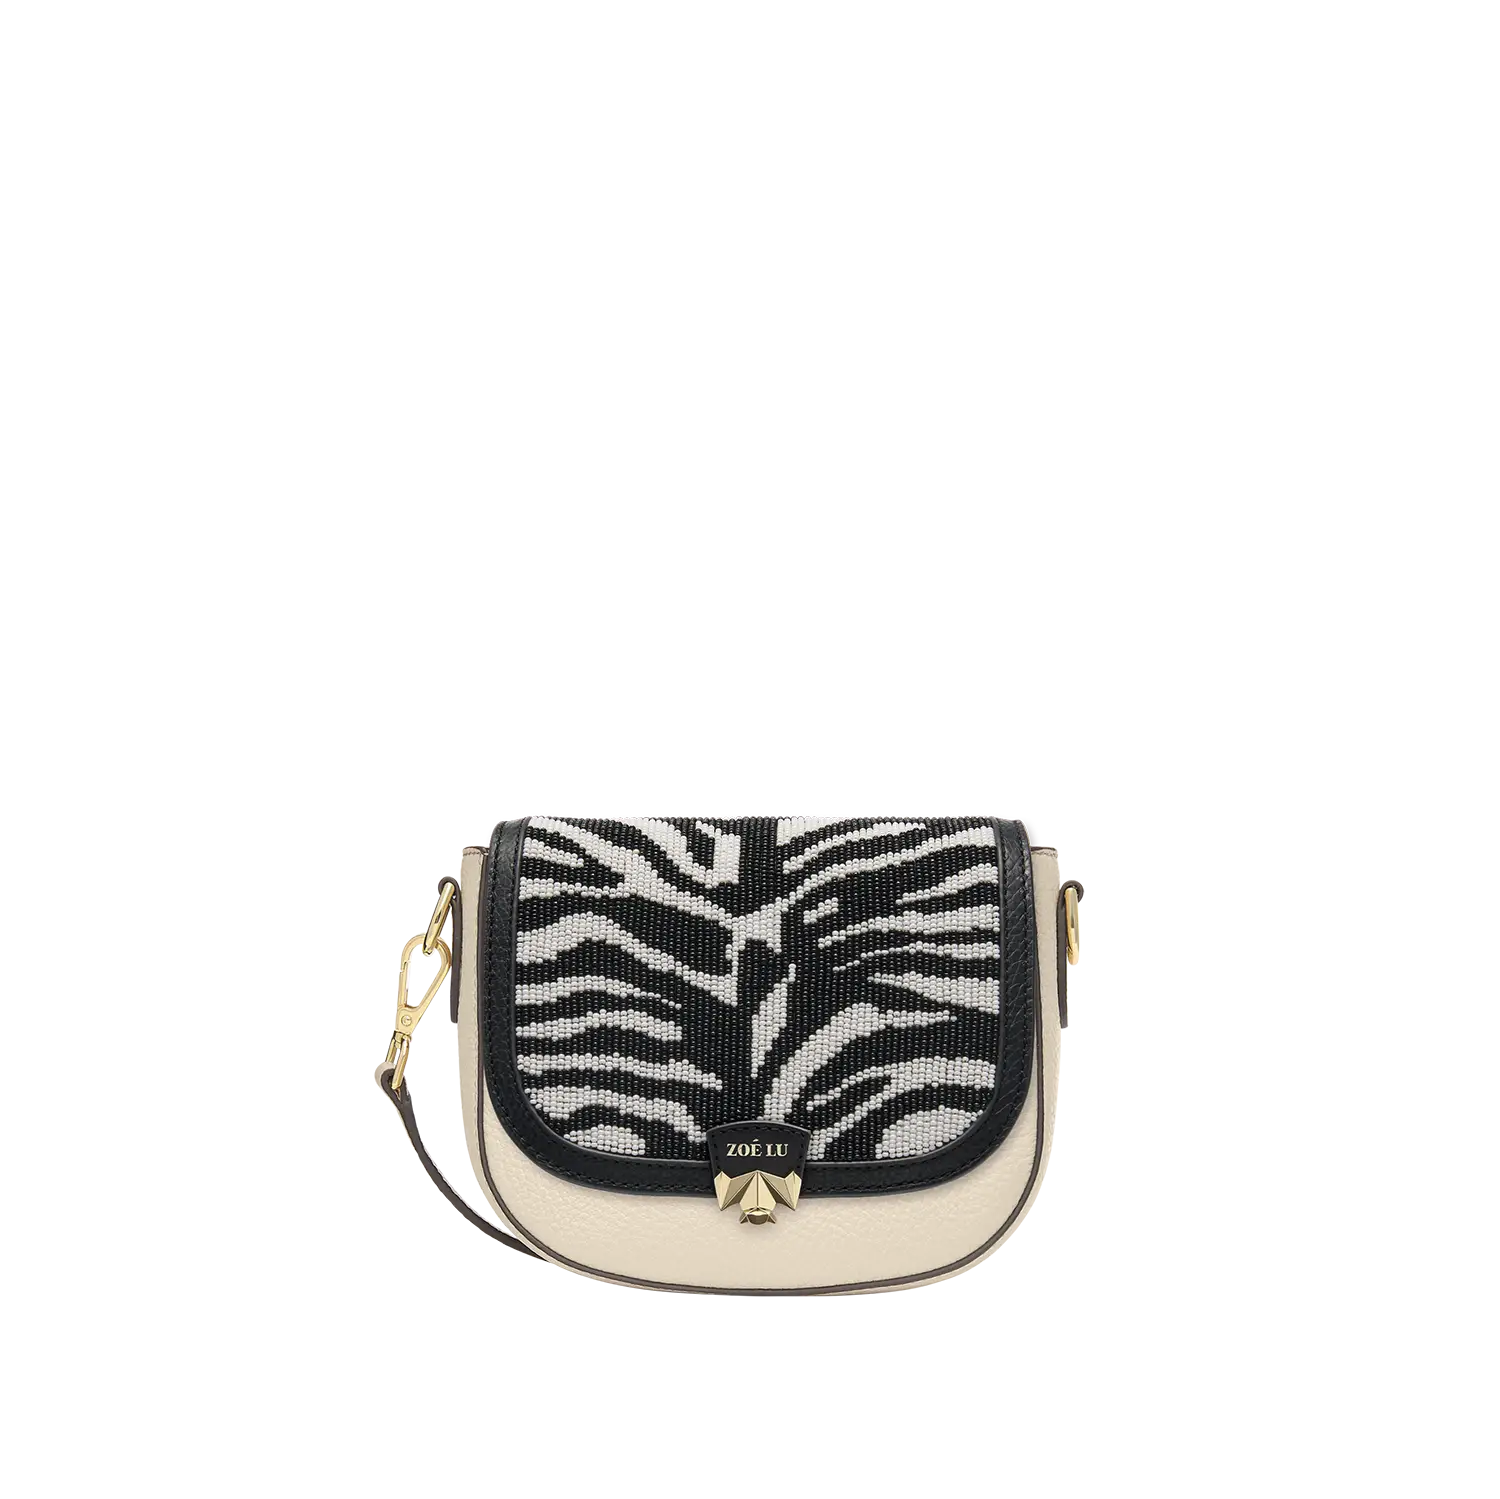 Wechselklappe - Mini Zebra Pearl - schwarz-weiß